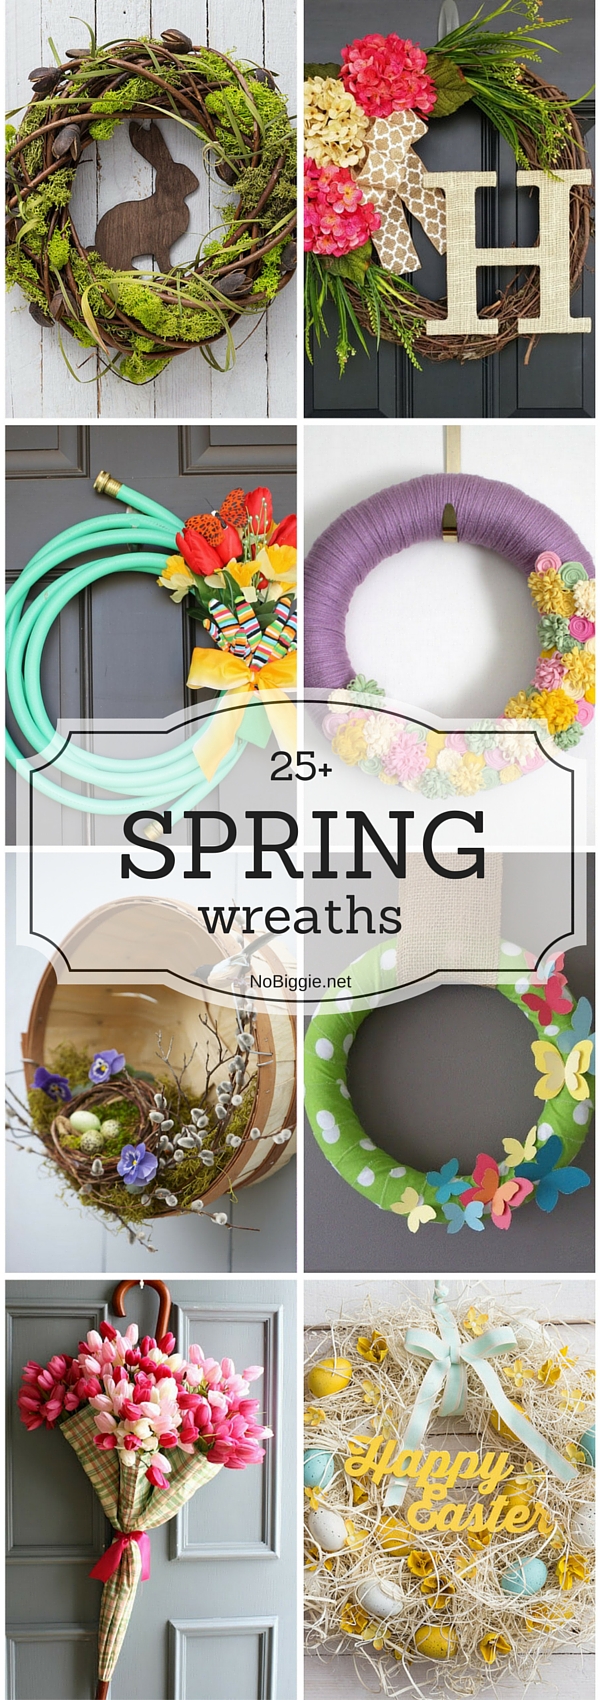 25+ Spring wreaths | NoBiggie.net